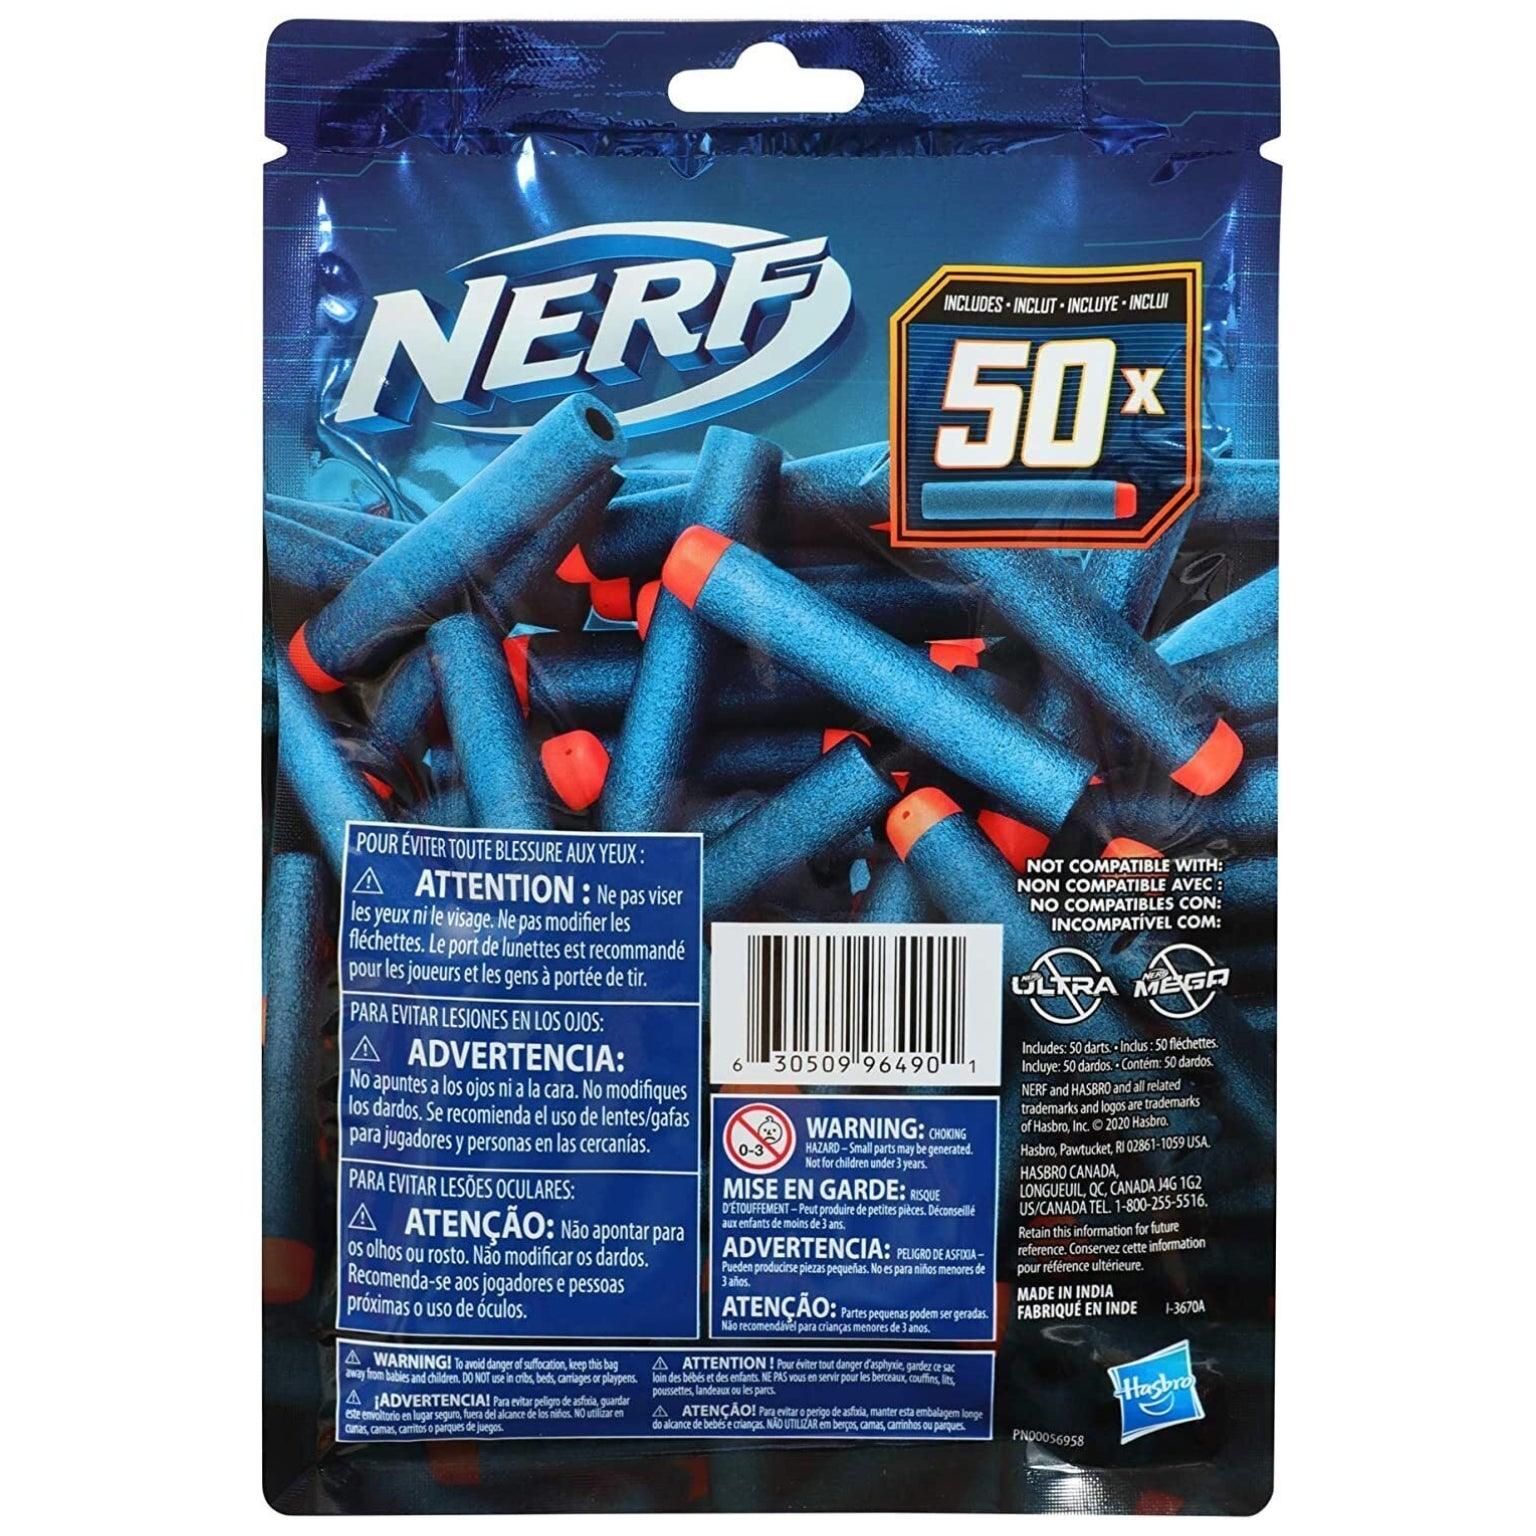 NERF Elite 2.0 Set de 50 Dardos - Brincatoys